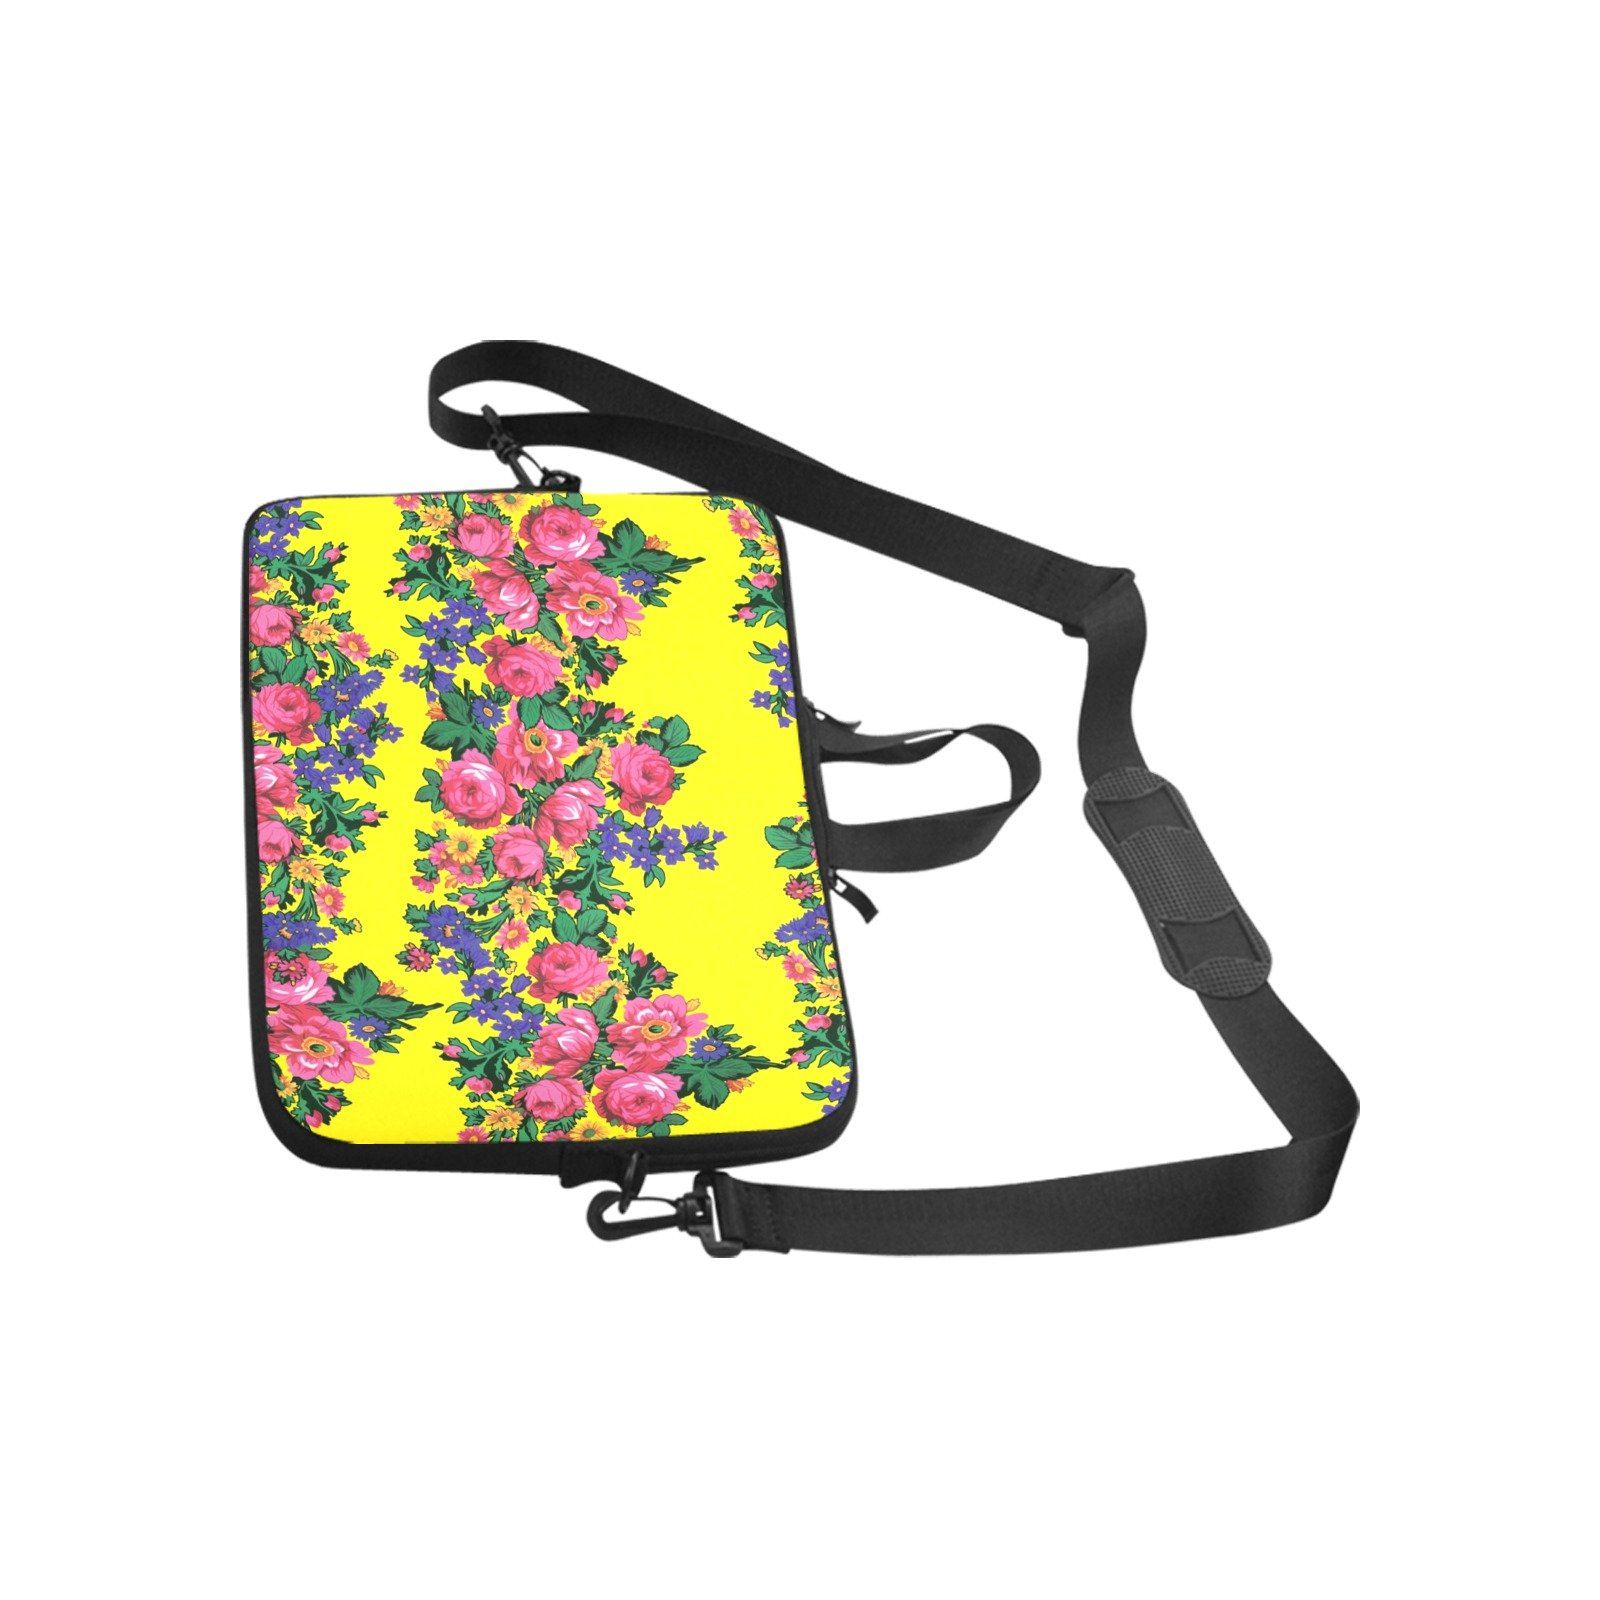 Kokum's Revenge Yellow Laptop Handbags 11" bag e-joyer 